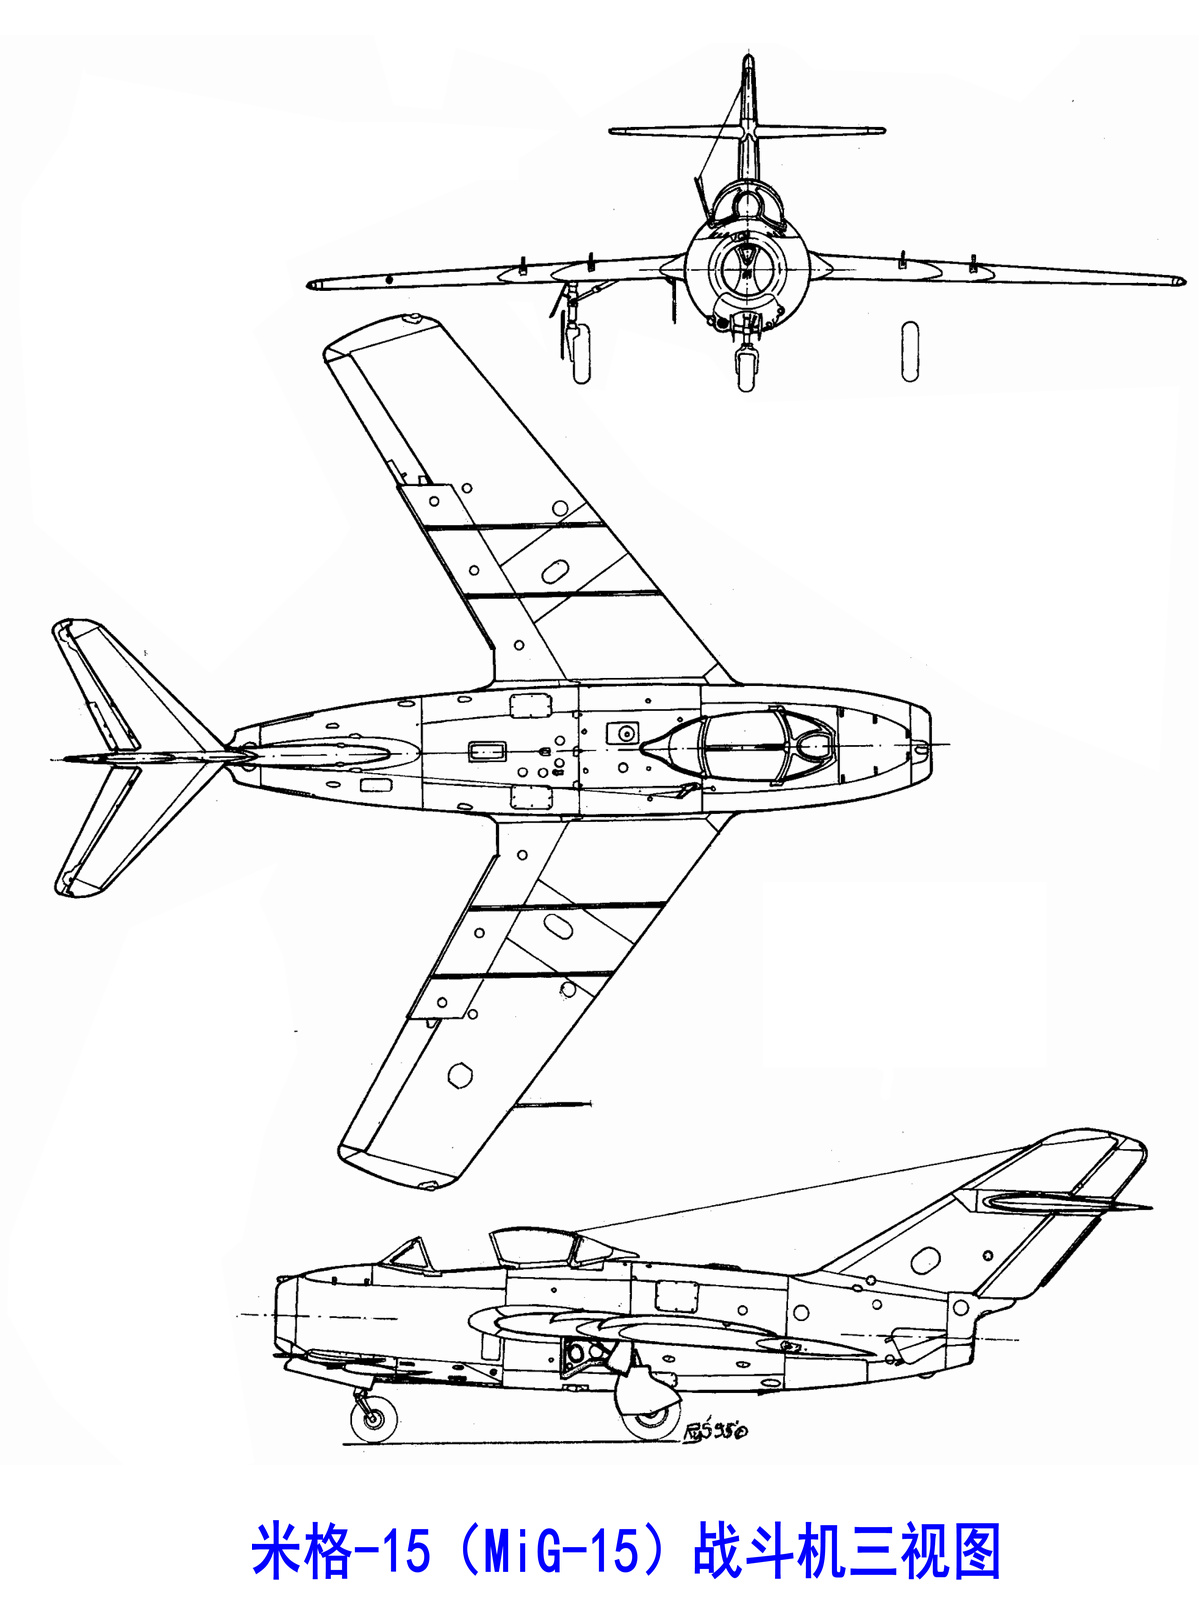 米格-15戰鬥機三視圖